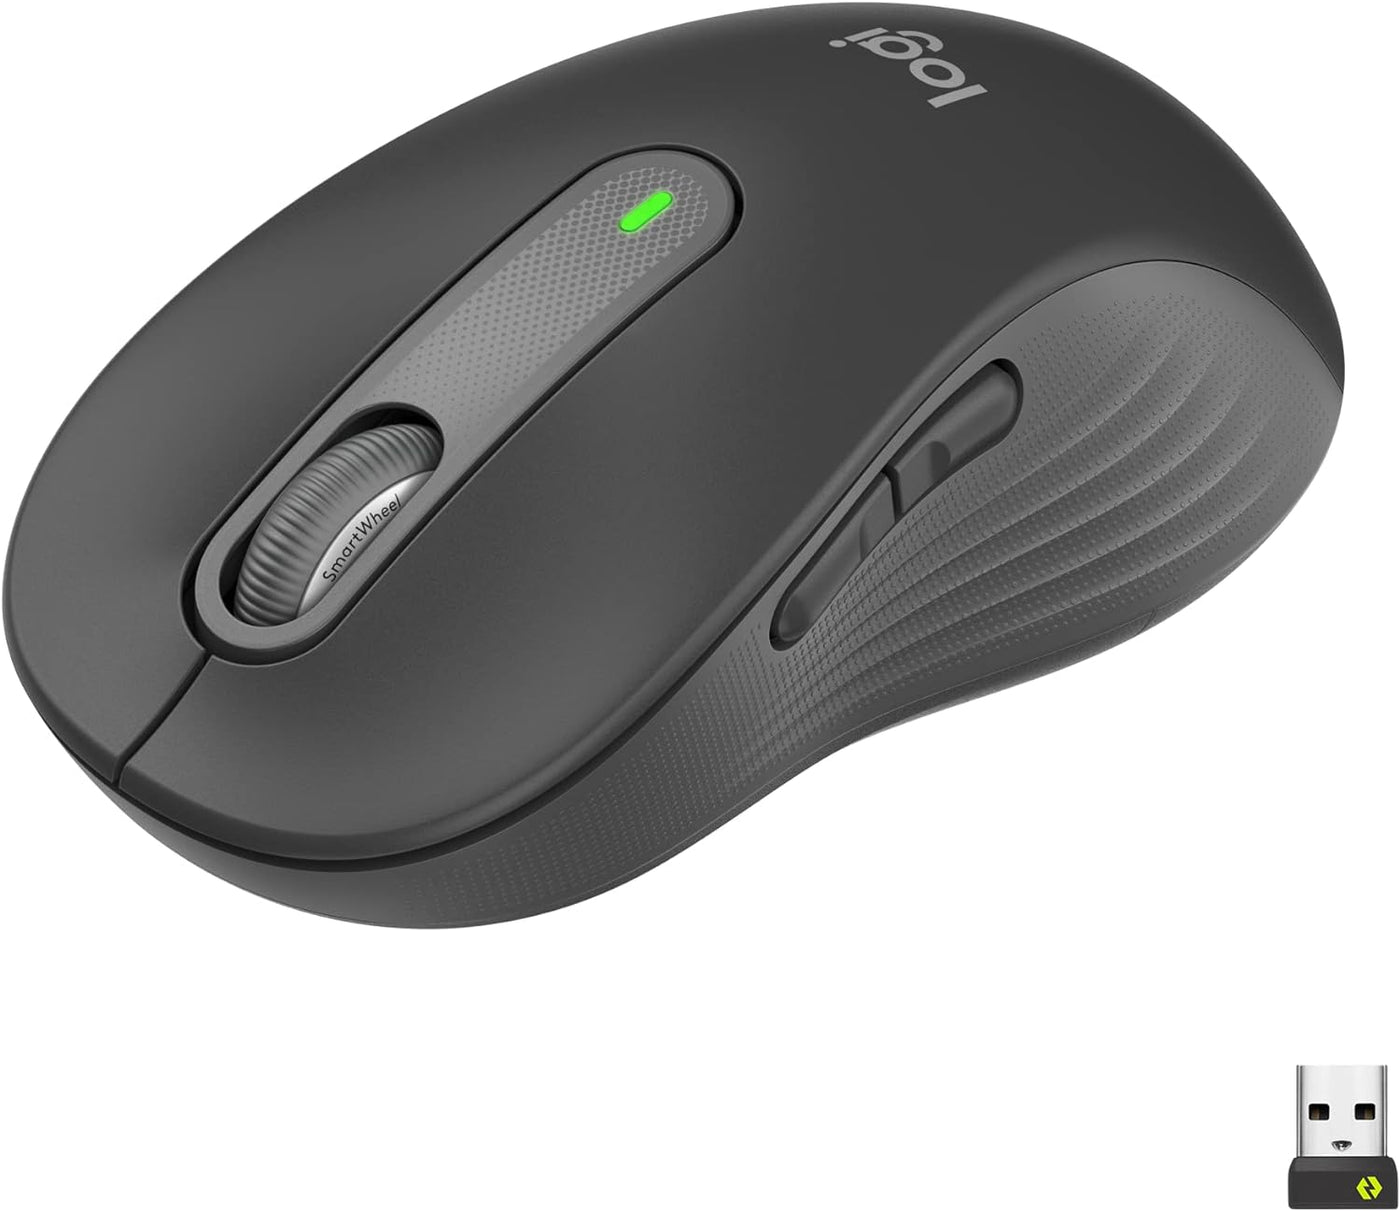 Mouse Logitech M650 Tamaño L Wireless(P163B)